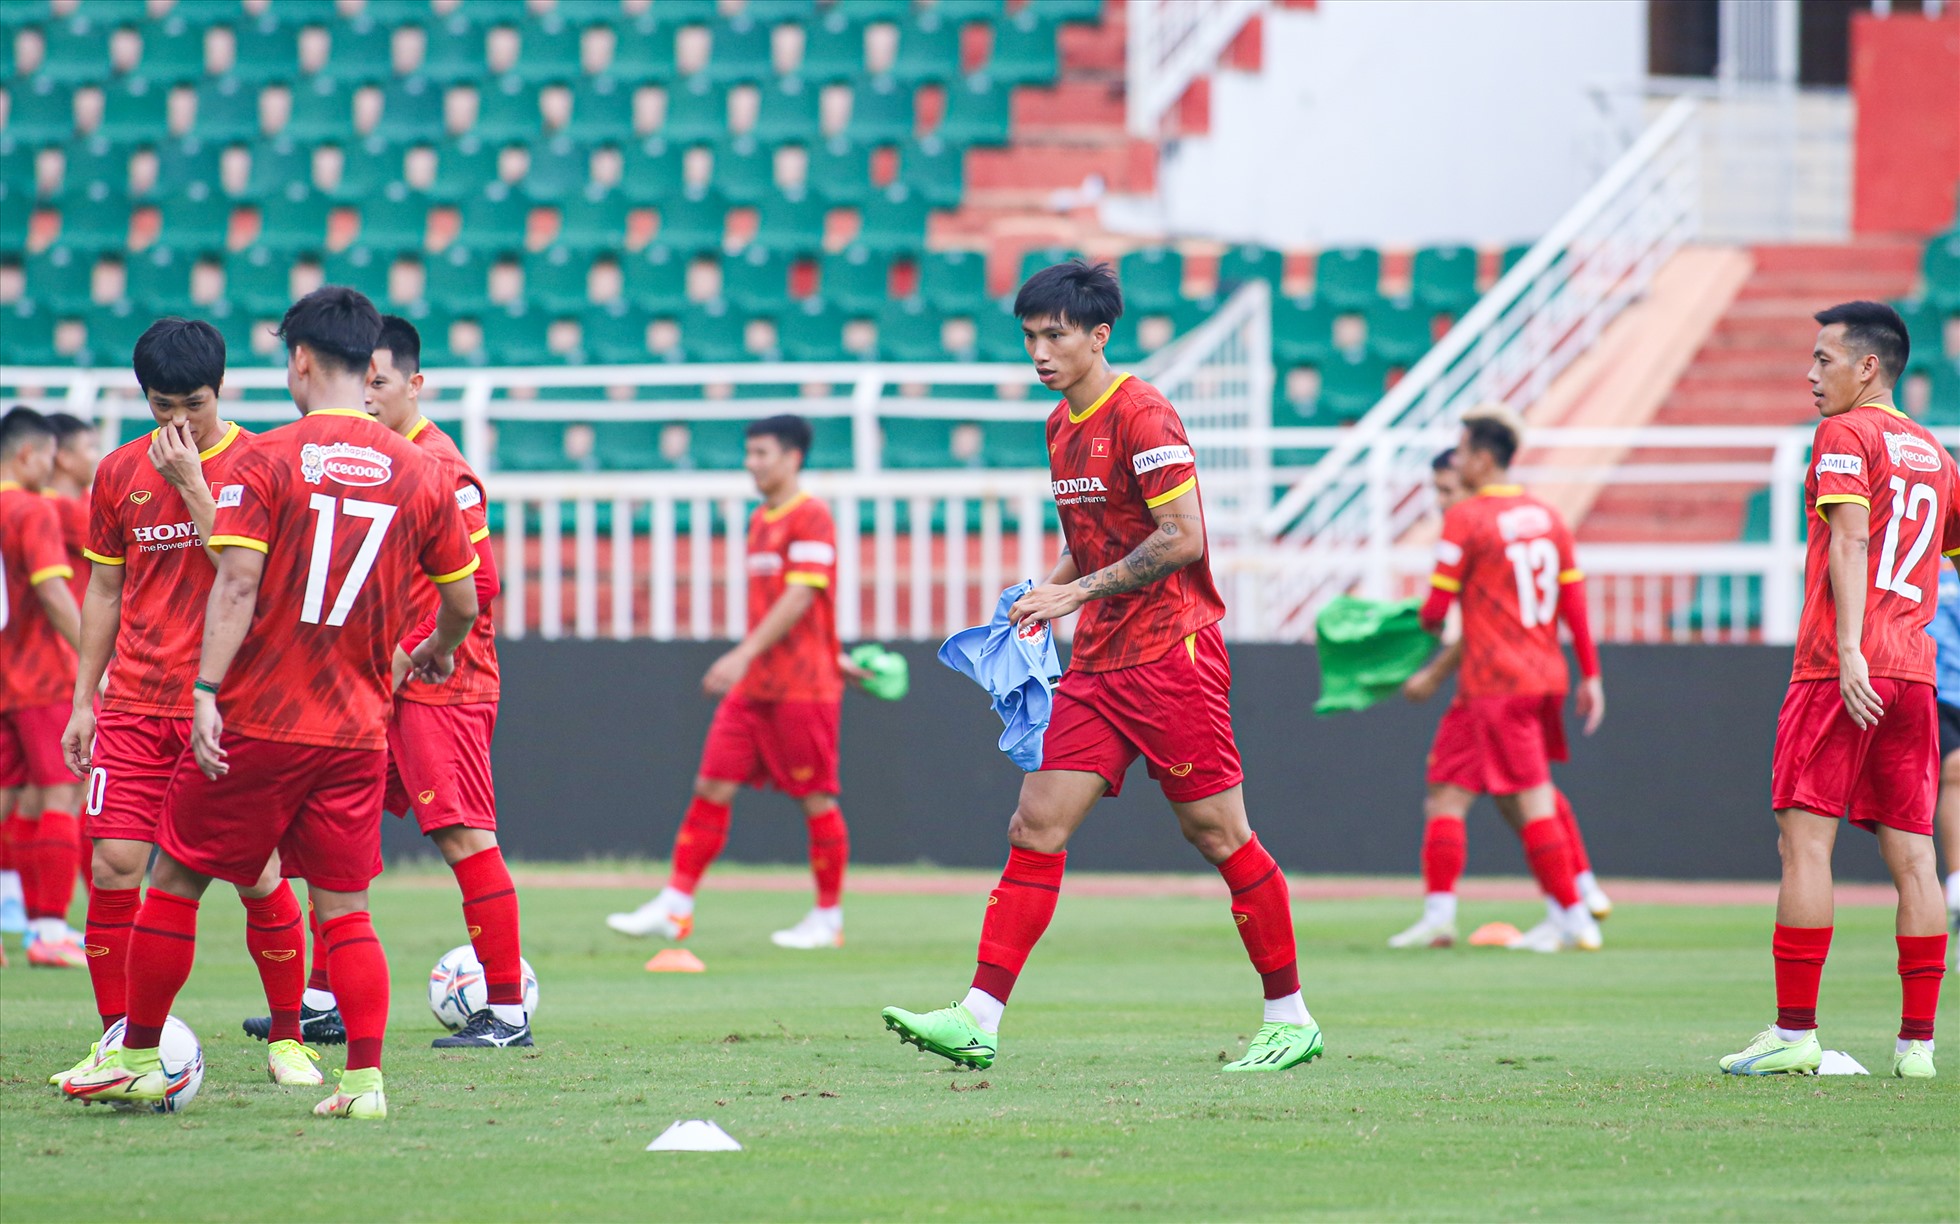 Theo lịch, tuyển Việt Nam sẽ lần lượt đối đầu Singapore (19h, ngày 21.9) và Ấn Độ (19h, ngày 27.9).